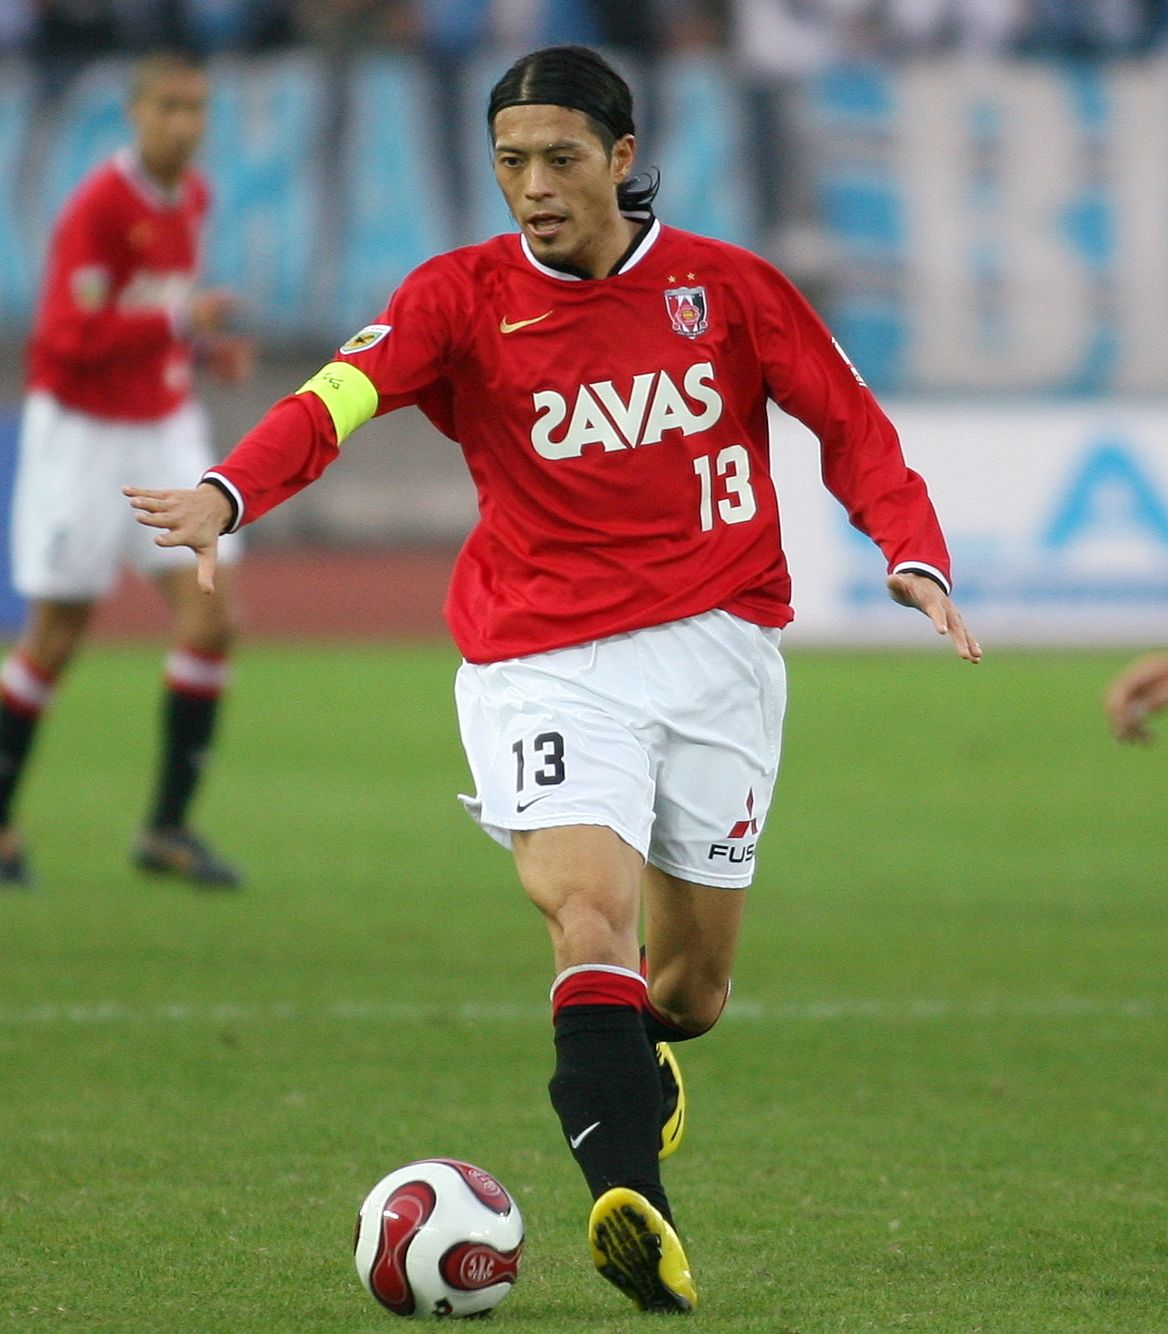 سوزوكي كيتا لاعب فريق أوراوا ريدز في إحدى مباريات كرة قدم ضد نادي يوكوهاما على أرضية ملعب نيسان بمحافظة كاناغاوا في الأول من ديسمبر/ كانون الأول 2007. (جيجي برس)